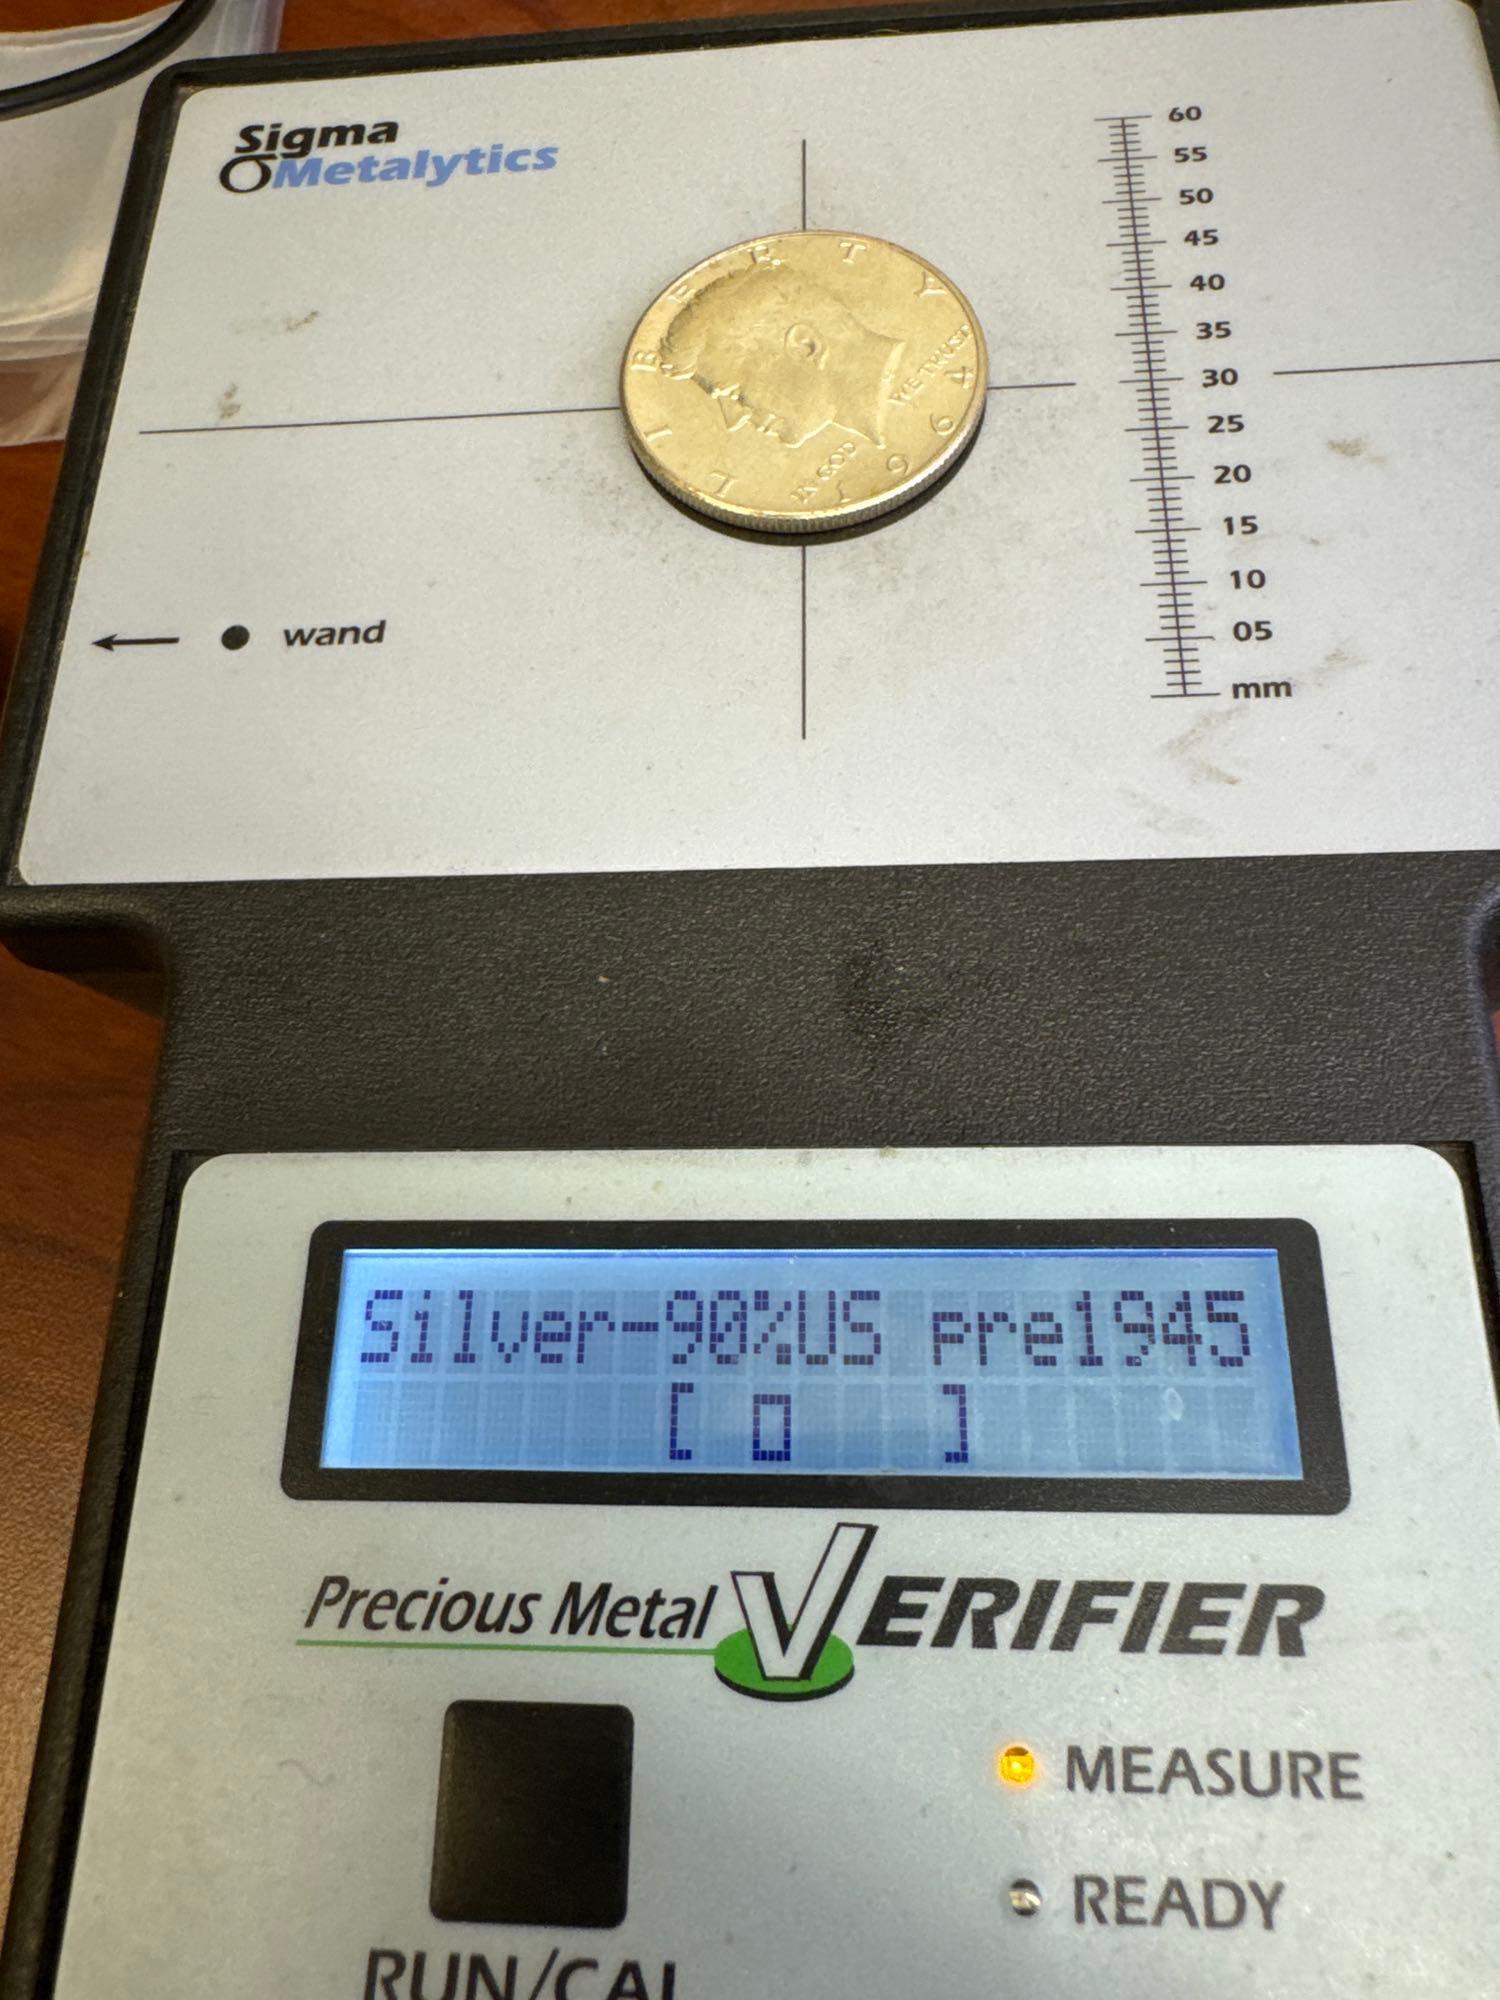 4x 1964 Kennedy Half Dollars 90% Silver Coins 1.76 Oz